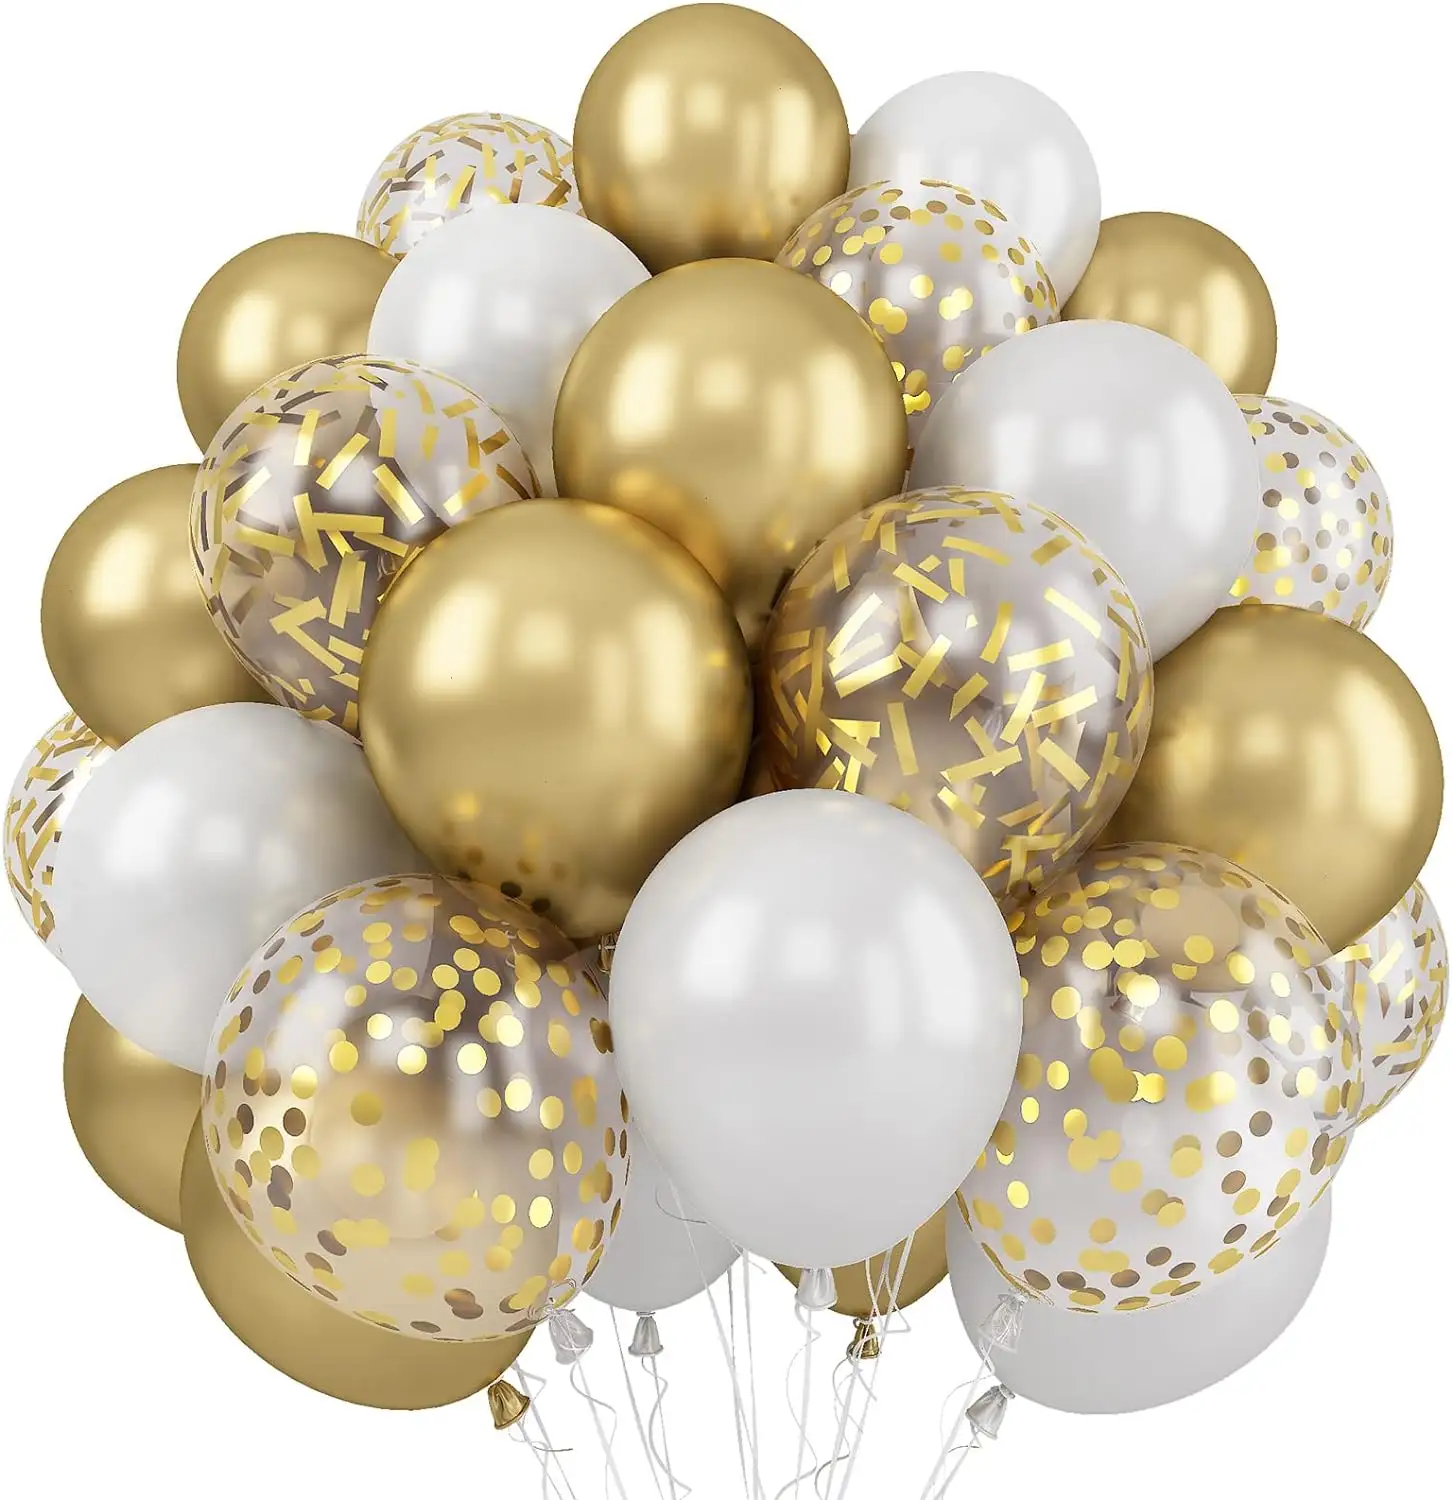 JYAO 60 حزمة 12 بوصة بالون ذهبي معدني بالونات من اللاتكس للبالونات حفلات عيد ميلاد